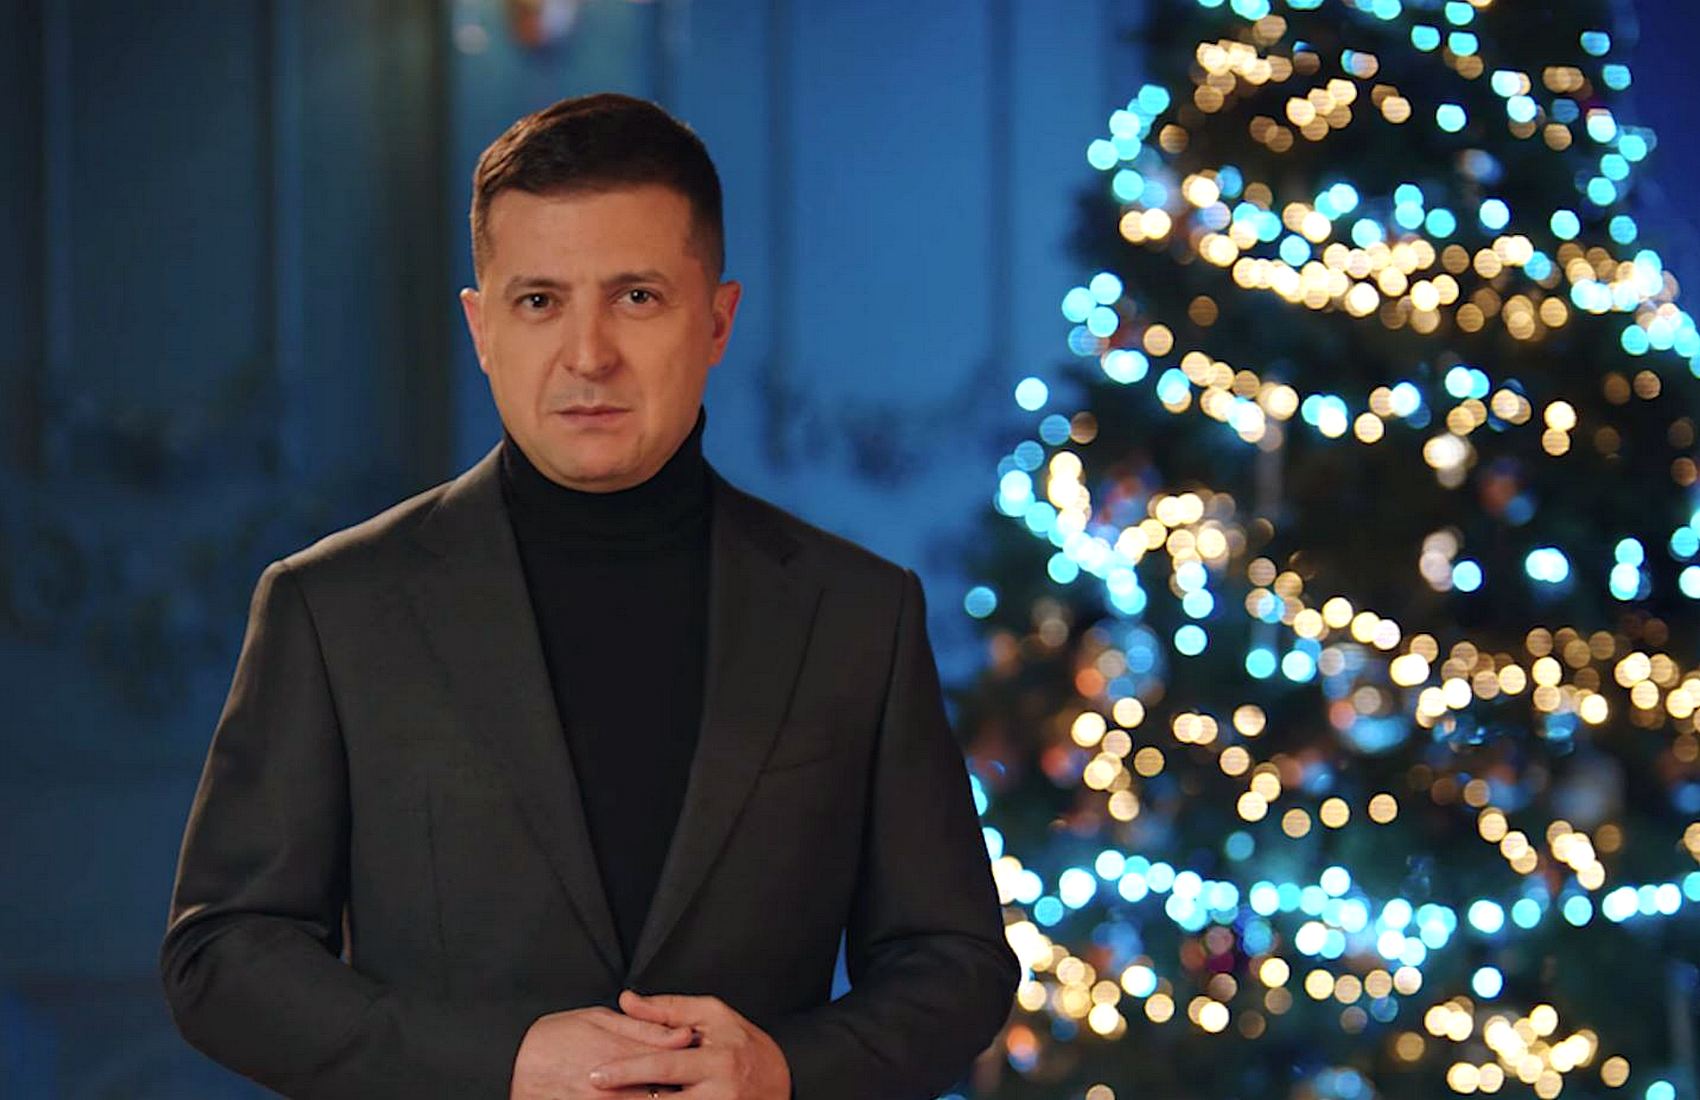 Зеленский порадовался, что украинцы не спорили из-за дат Рождества